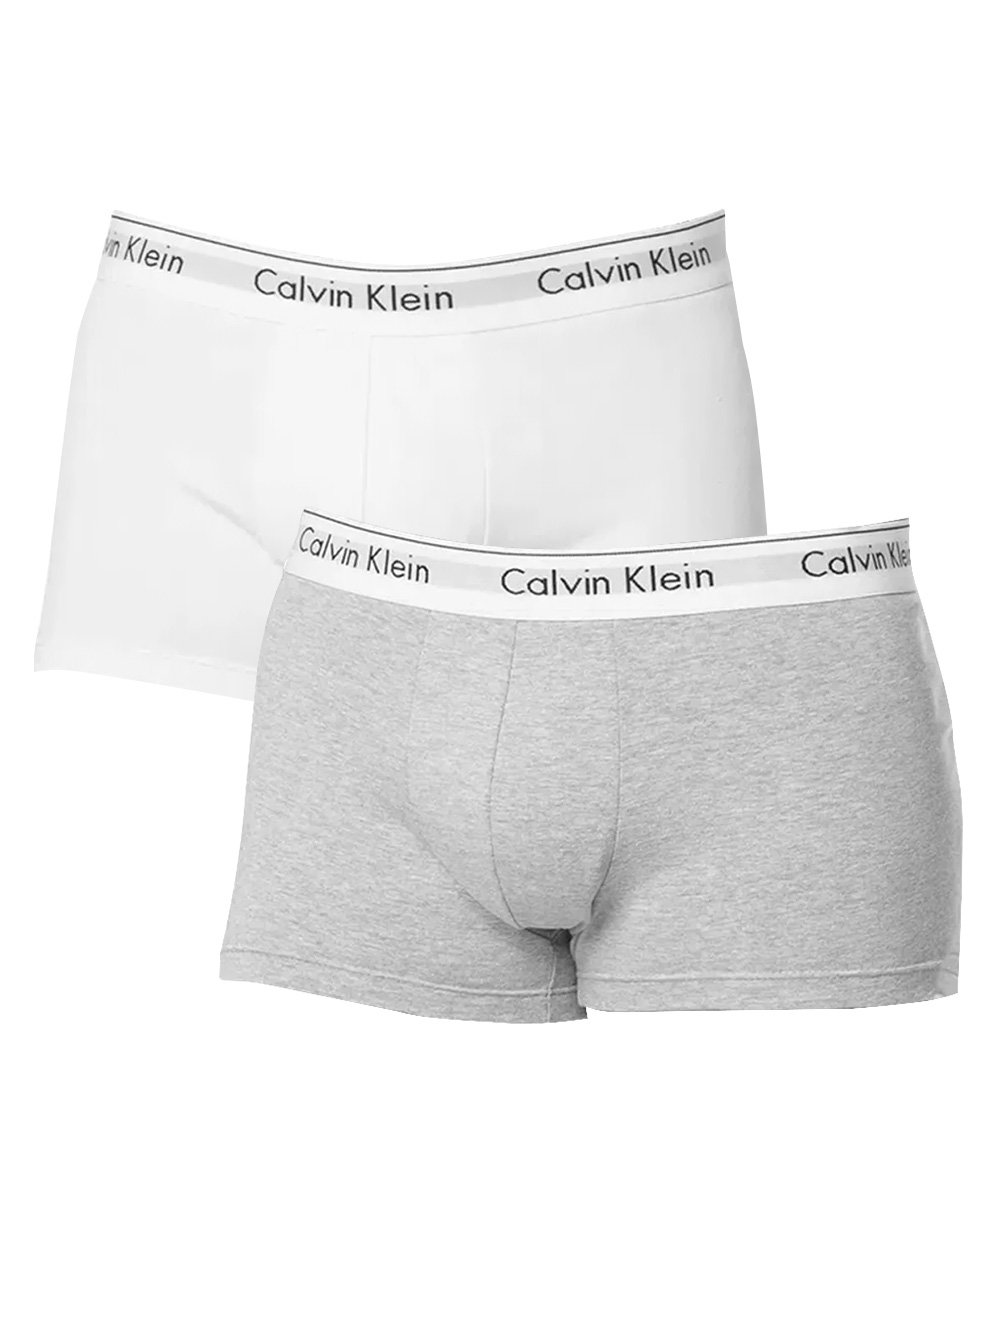 Cuecas Calvin Klein Trunk Modern Cotton Branca / Cinza Mescla Pack 2UN